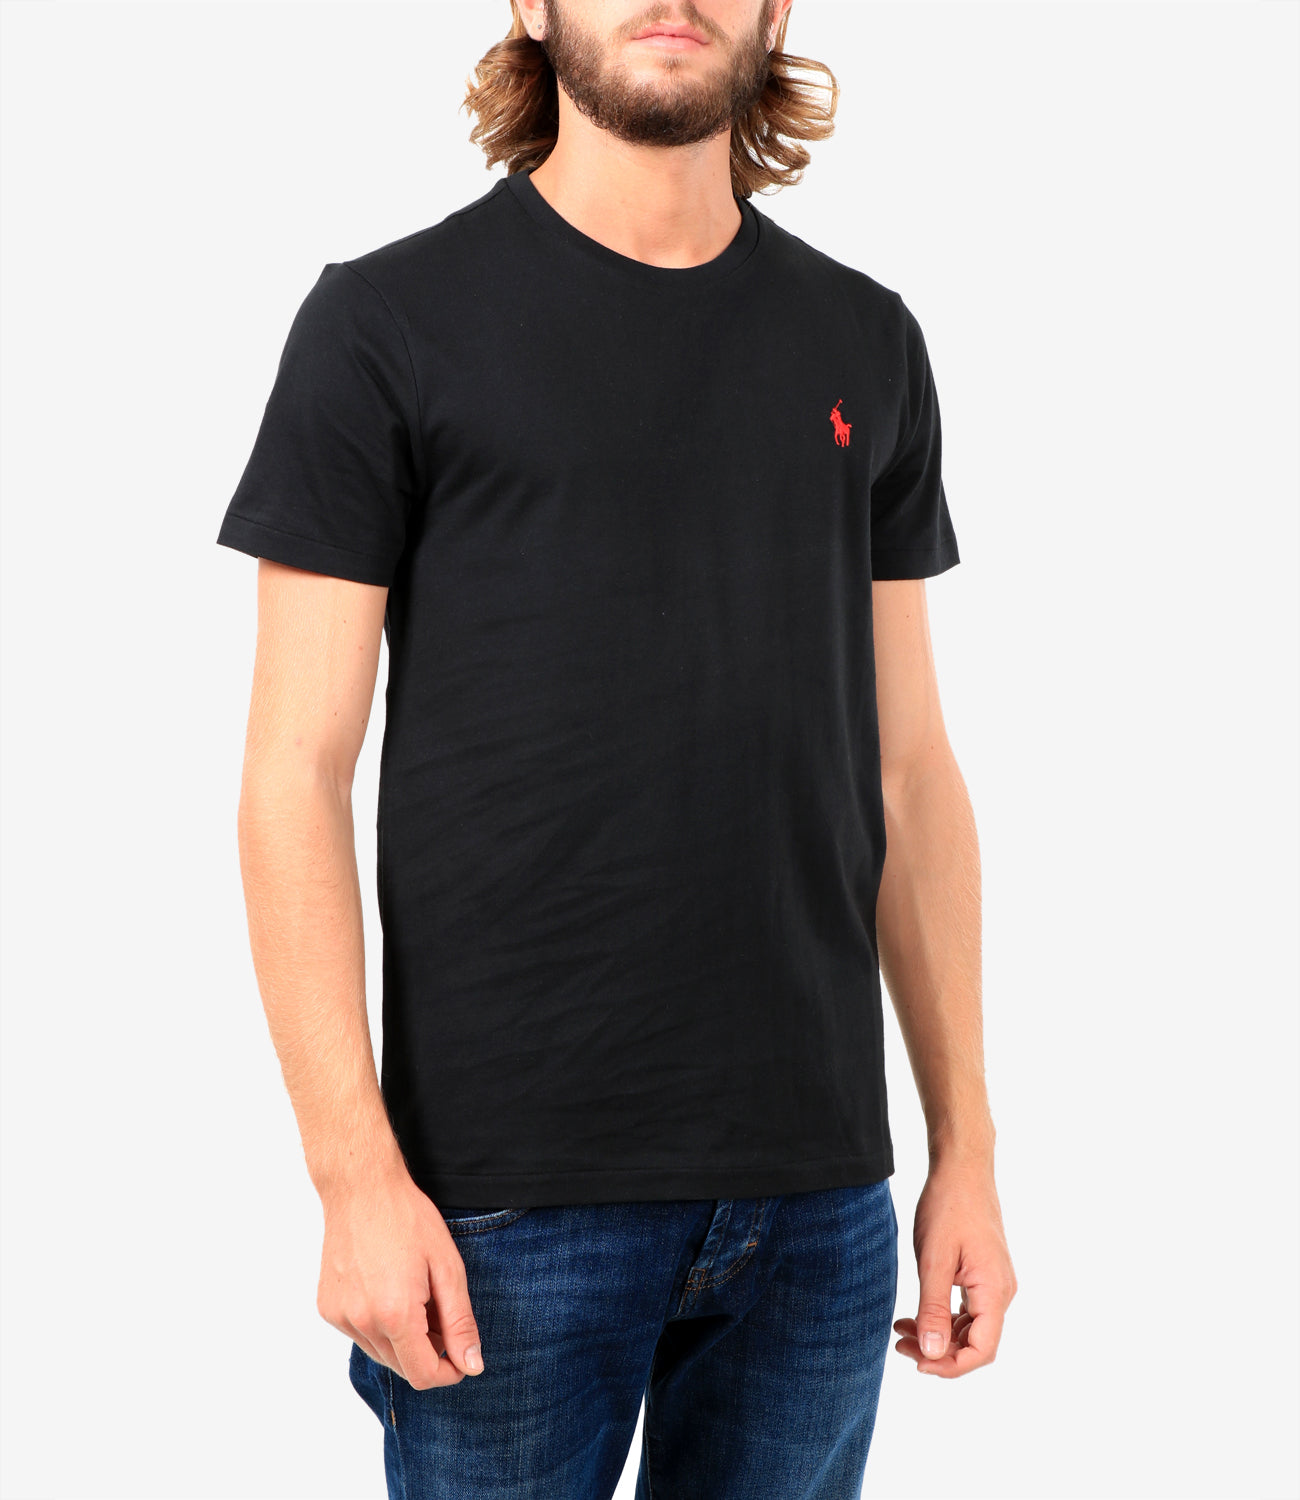 Polo Ralph Lauren | T-Shirt Nera